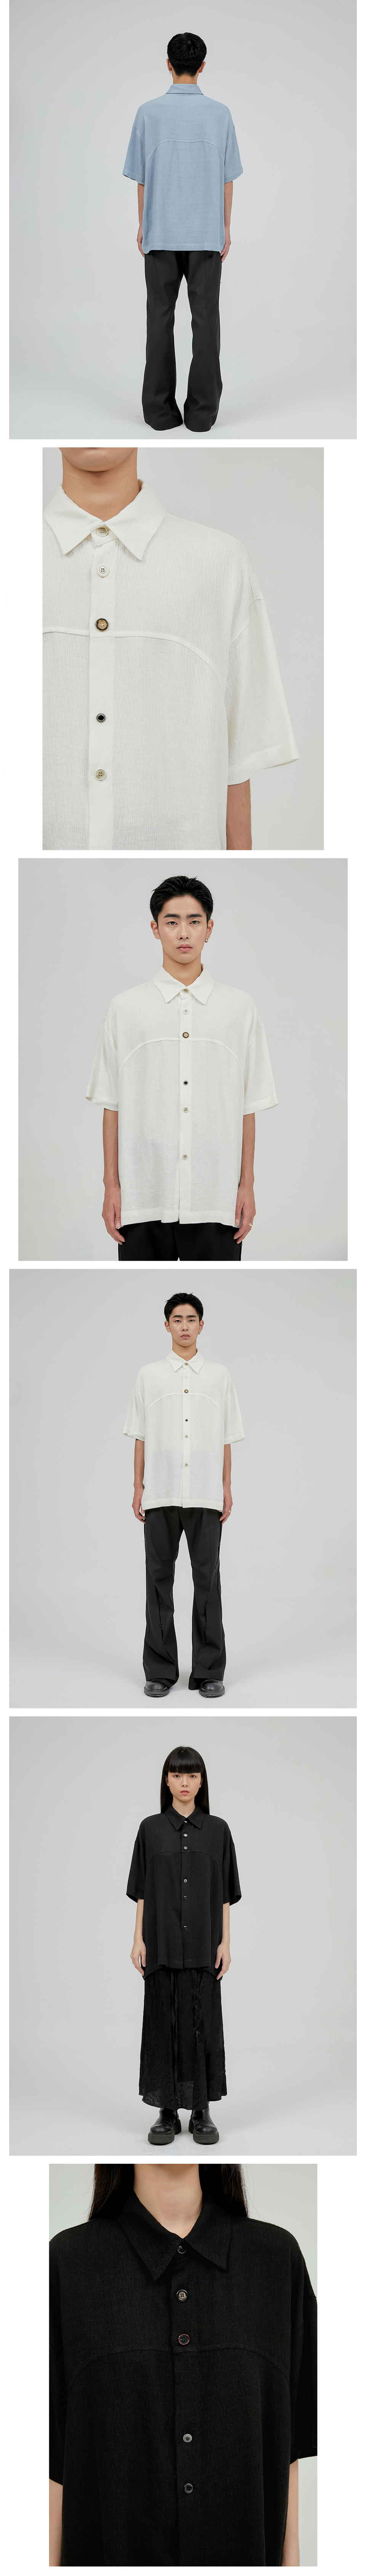 FLARE UP (フレアアップ) E21 Western Short-sleeved Linen Shirt